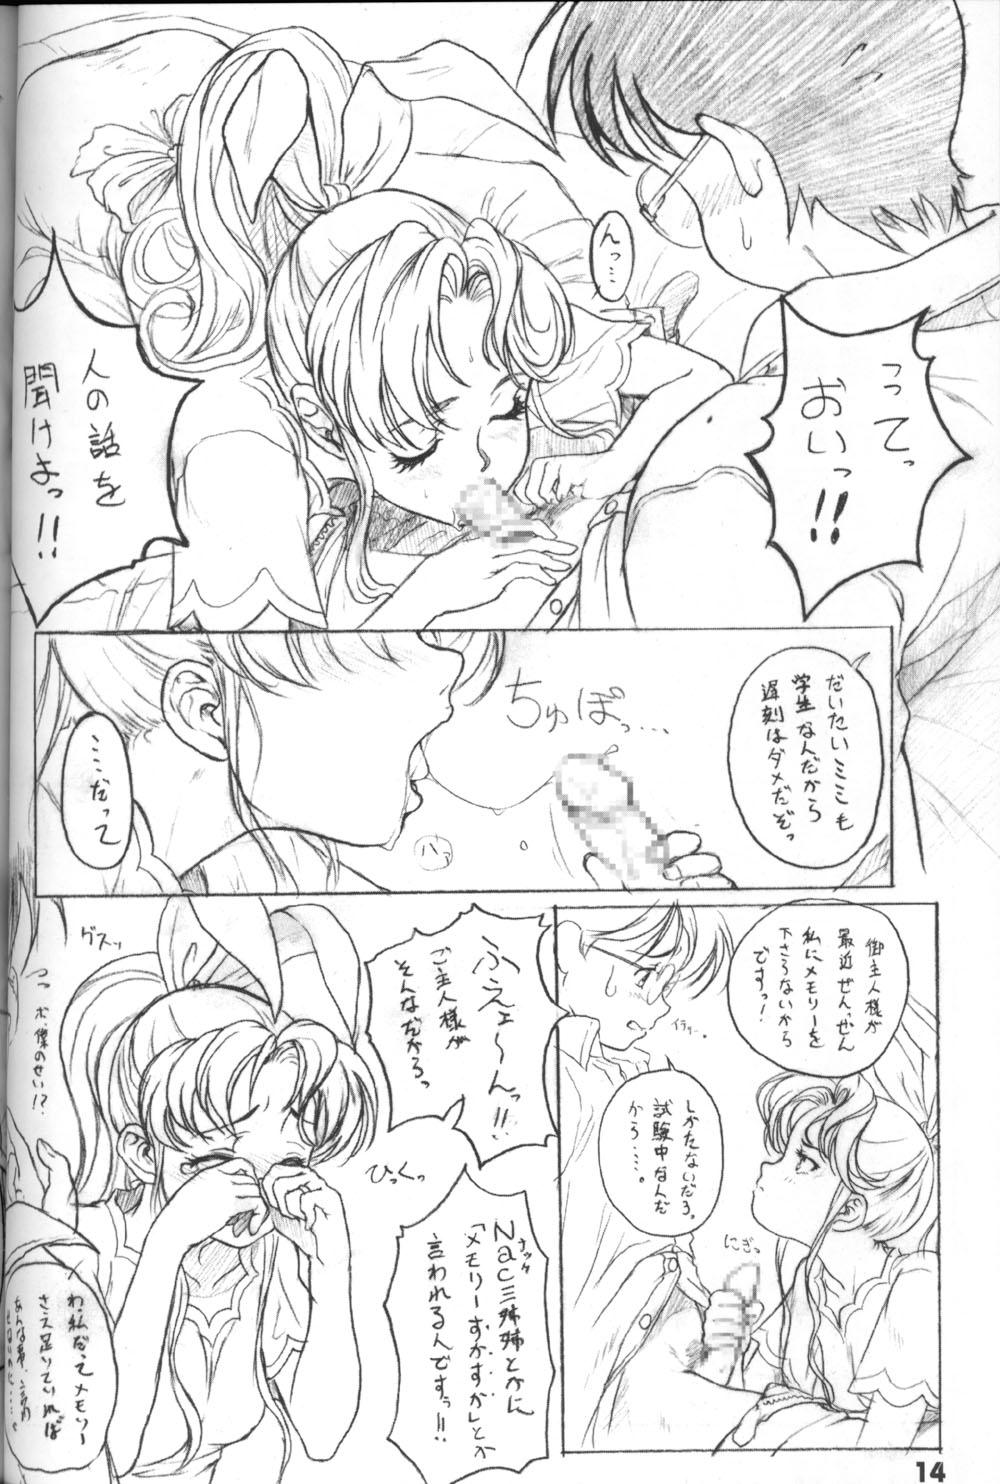 Mistress Buttobi!! CPU - Kanshou Sokushin Keikaku - Buttobi cpu Porno Amateur - Page 13